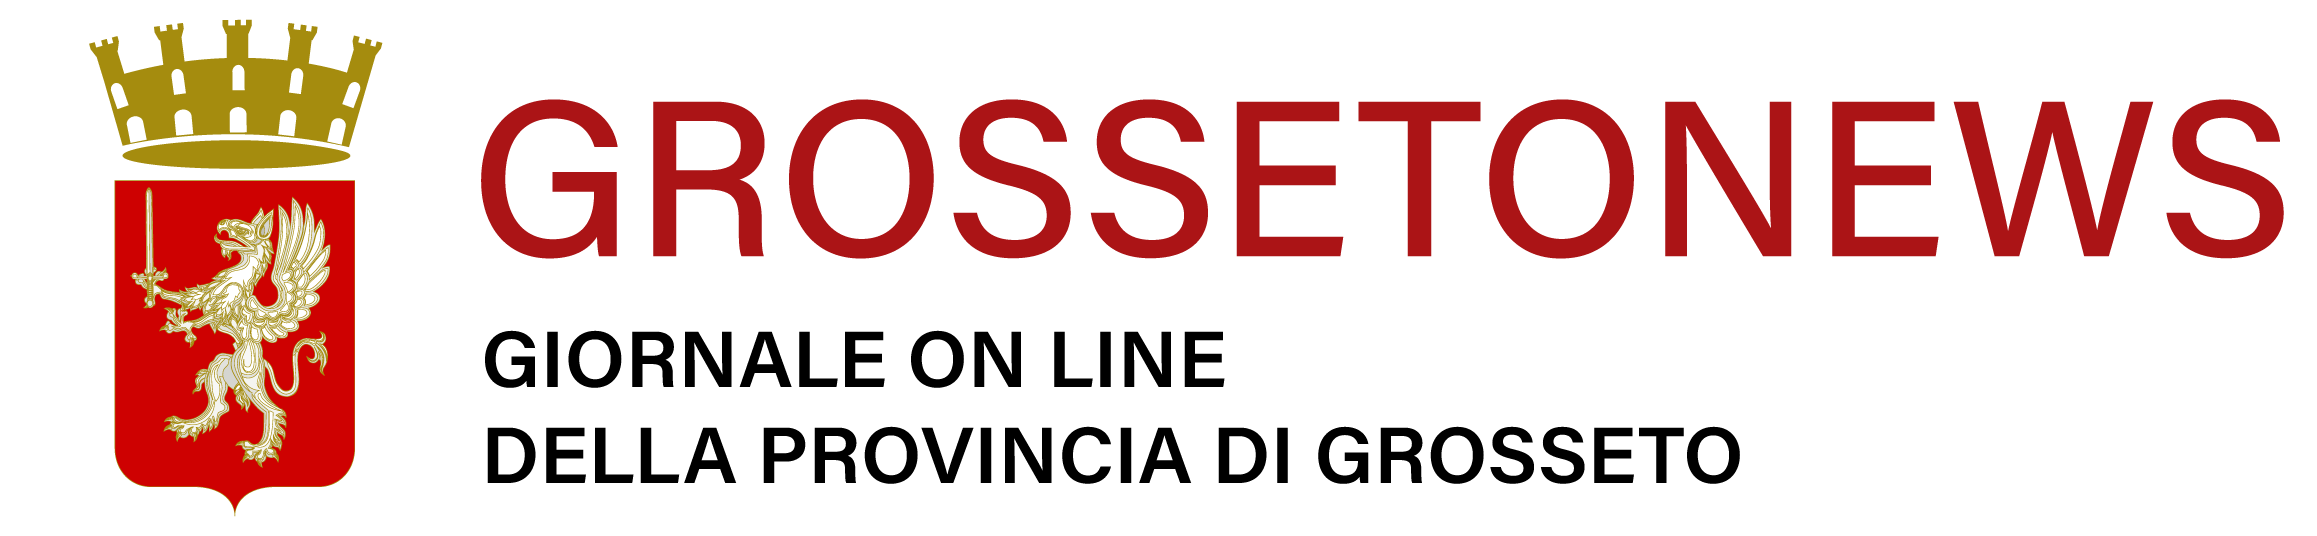 Notizie Grosseto – Giornale on line della provincia di Grosseto